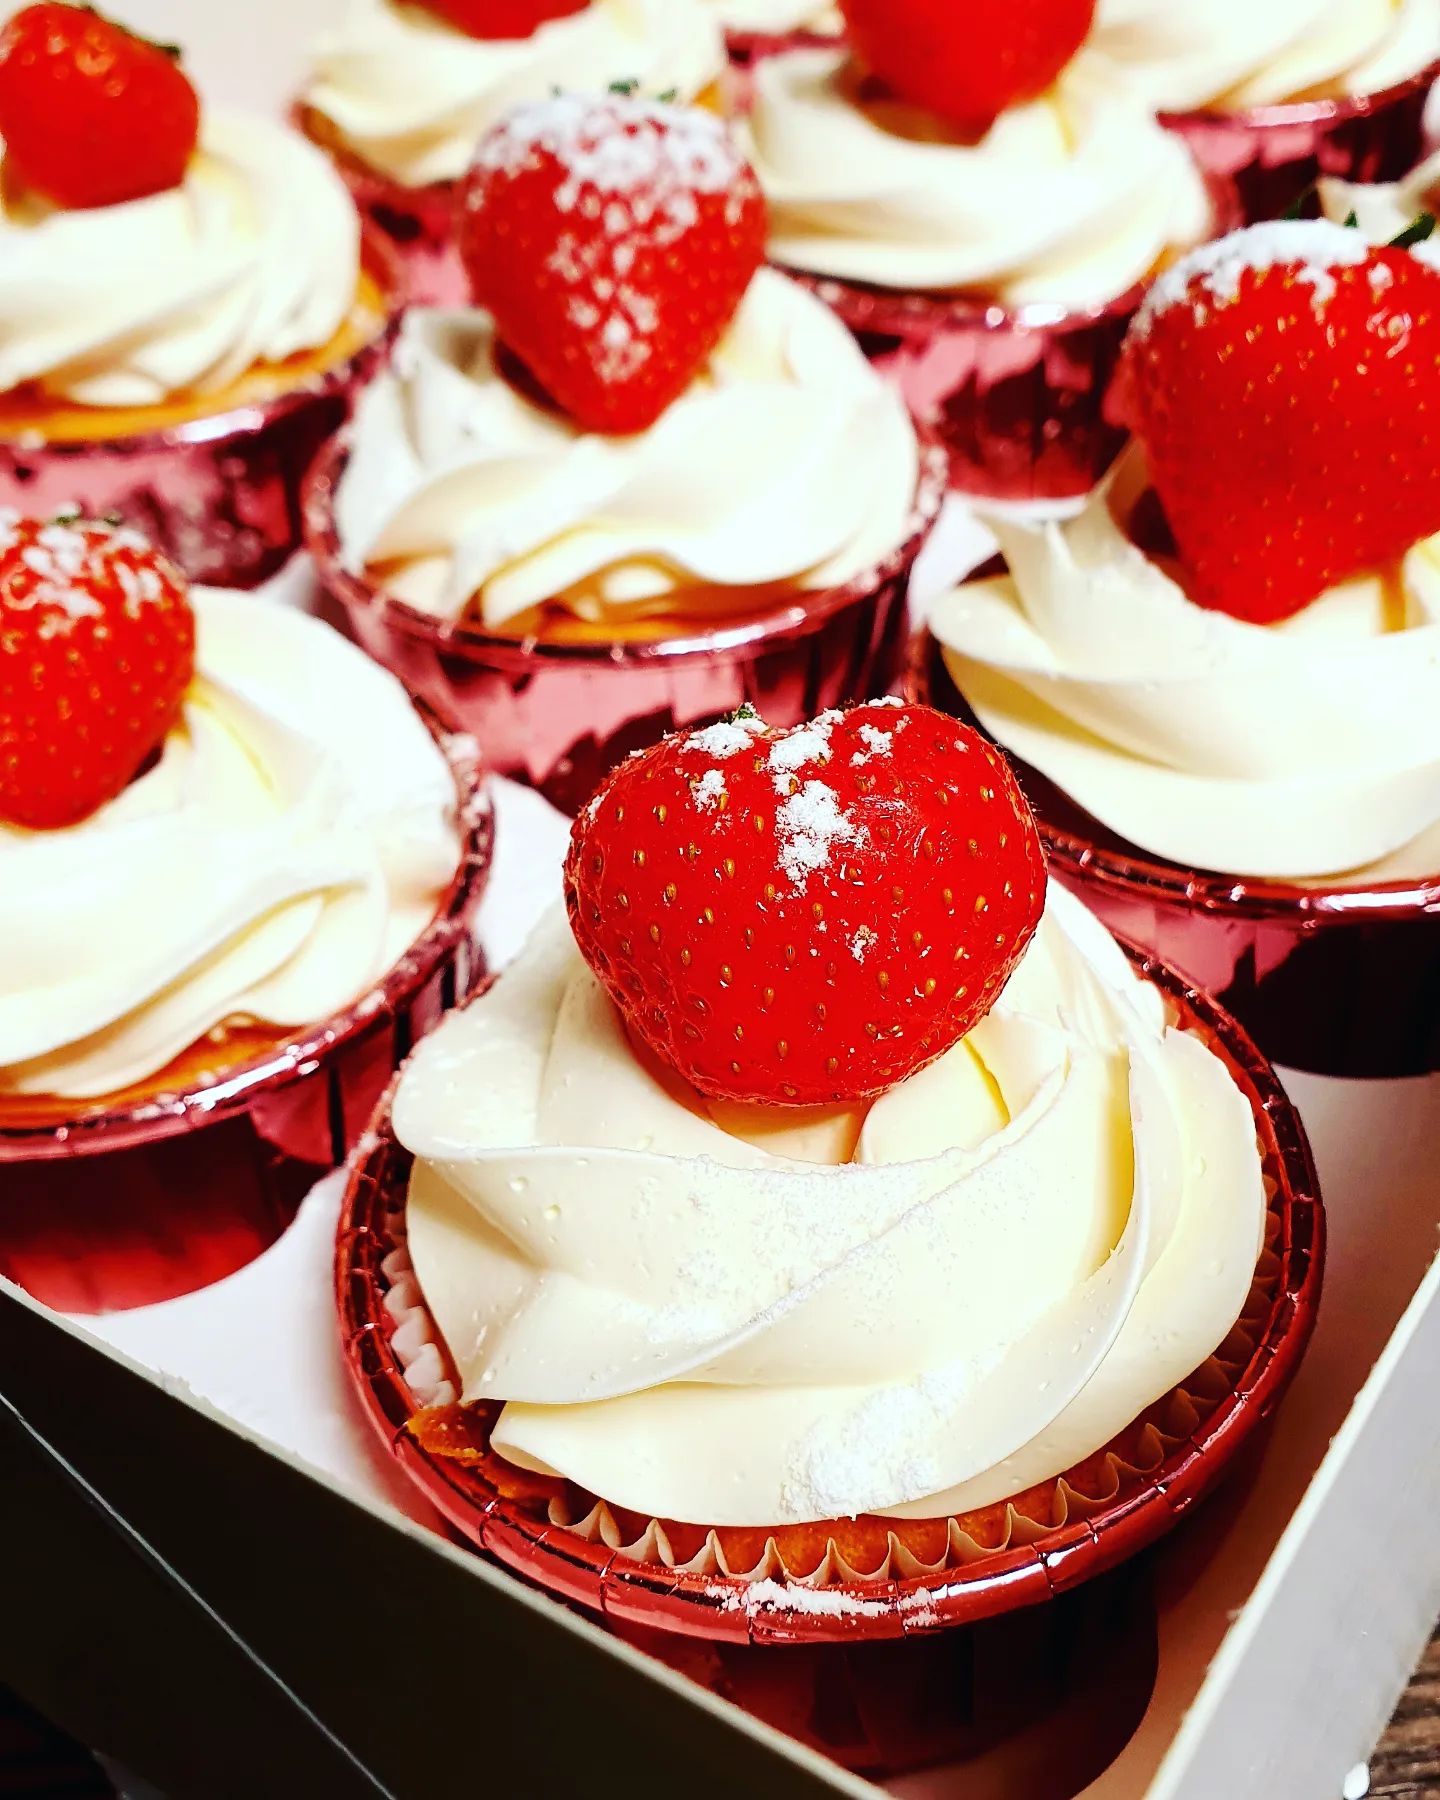 Cupcakes met een toefje vanille swiss meringue en een heerlijke aardbei #swissmeringuebuttercream #strawberry #aardbeien #meinardi #trouwen #trouwenin2022 #rietland